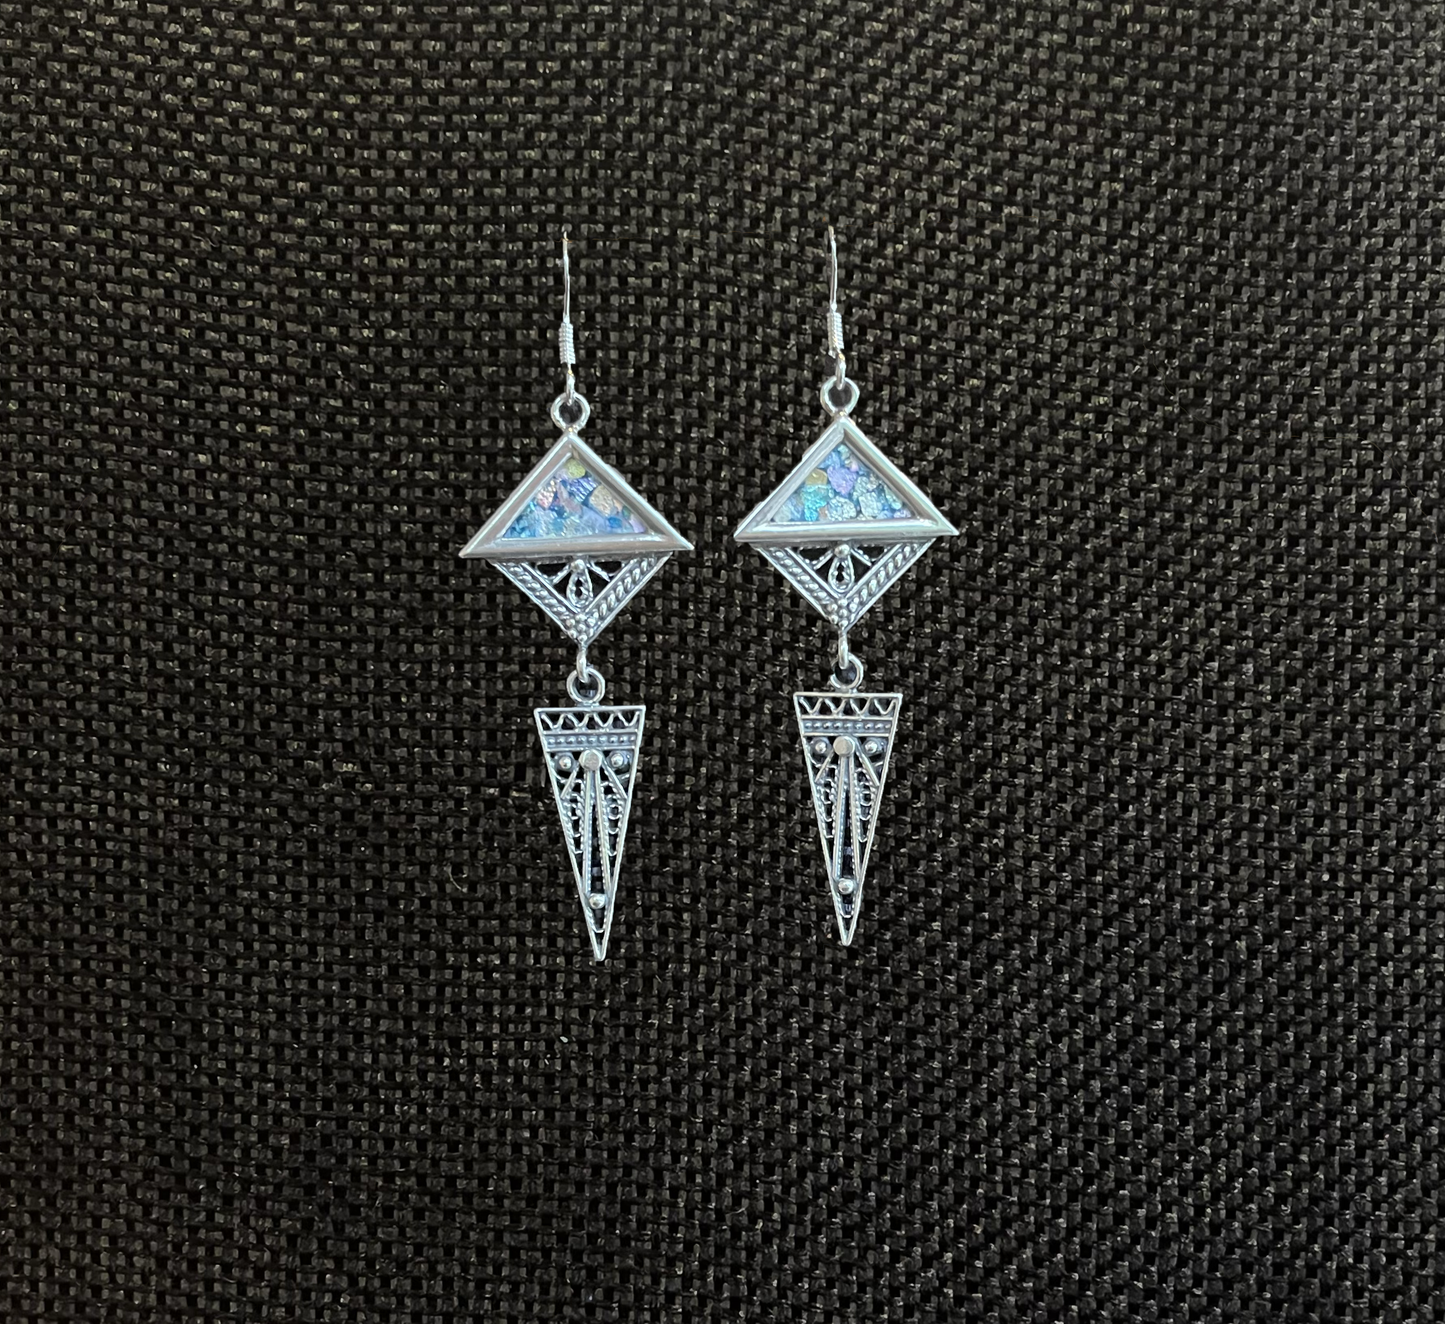 Silver Roman Glass Earrings